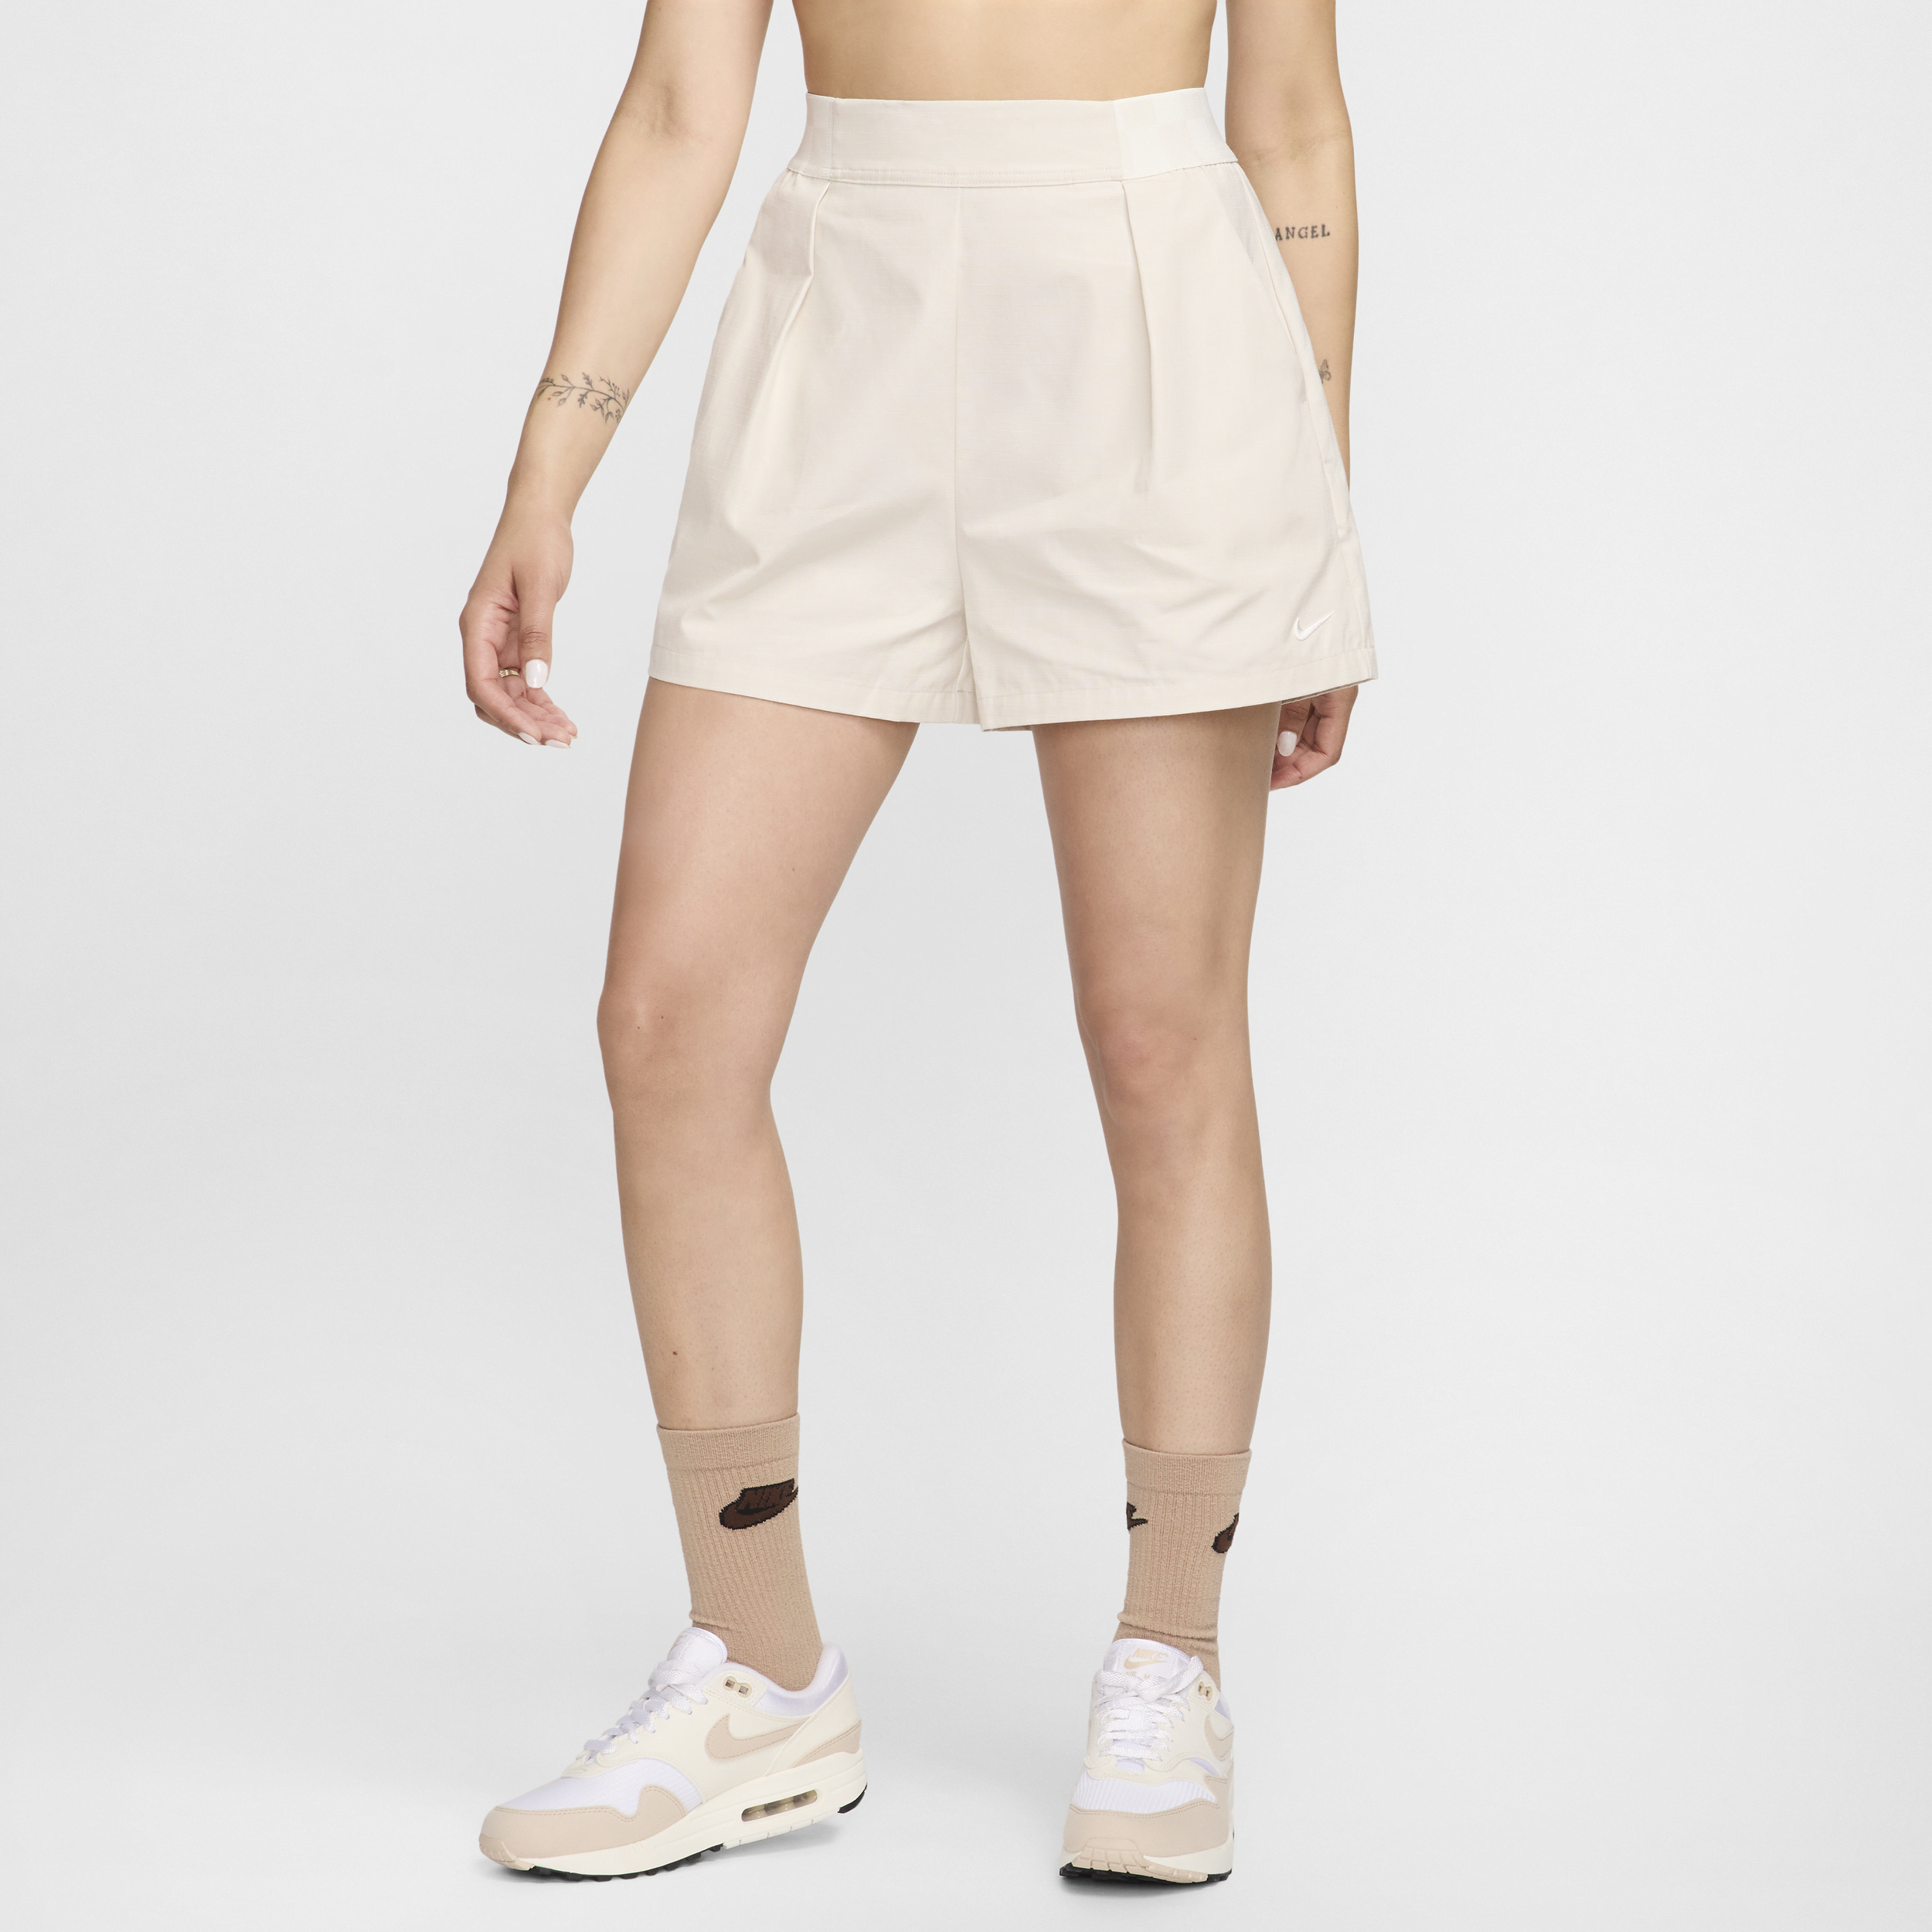 Nike Sportswear Collection Pantalón corto de 8 cm y talle alto - Mujer - Marrón